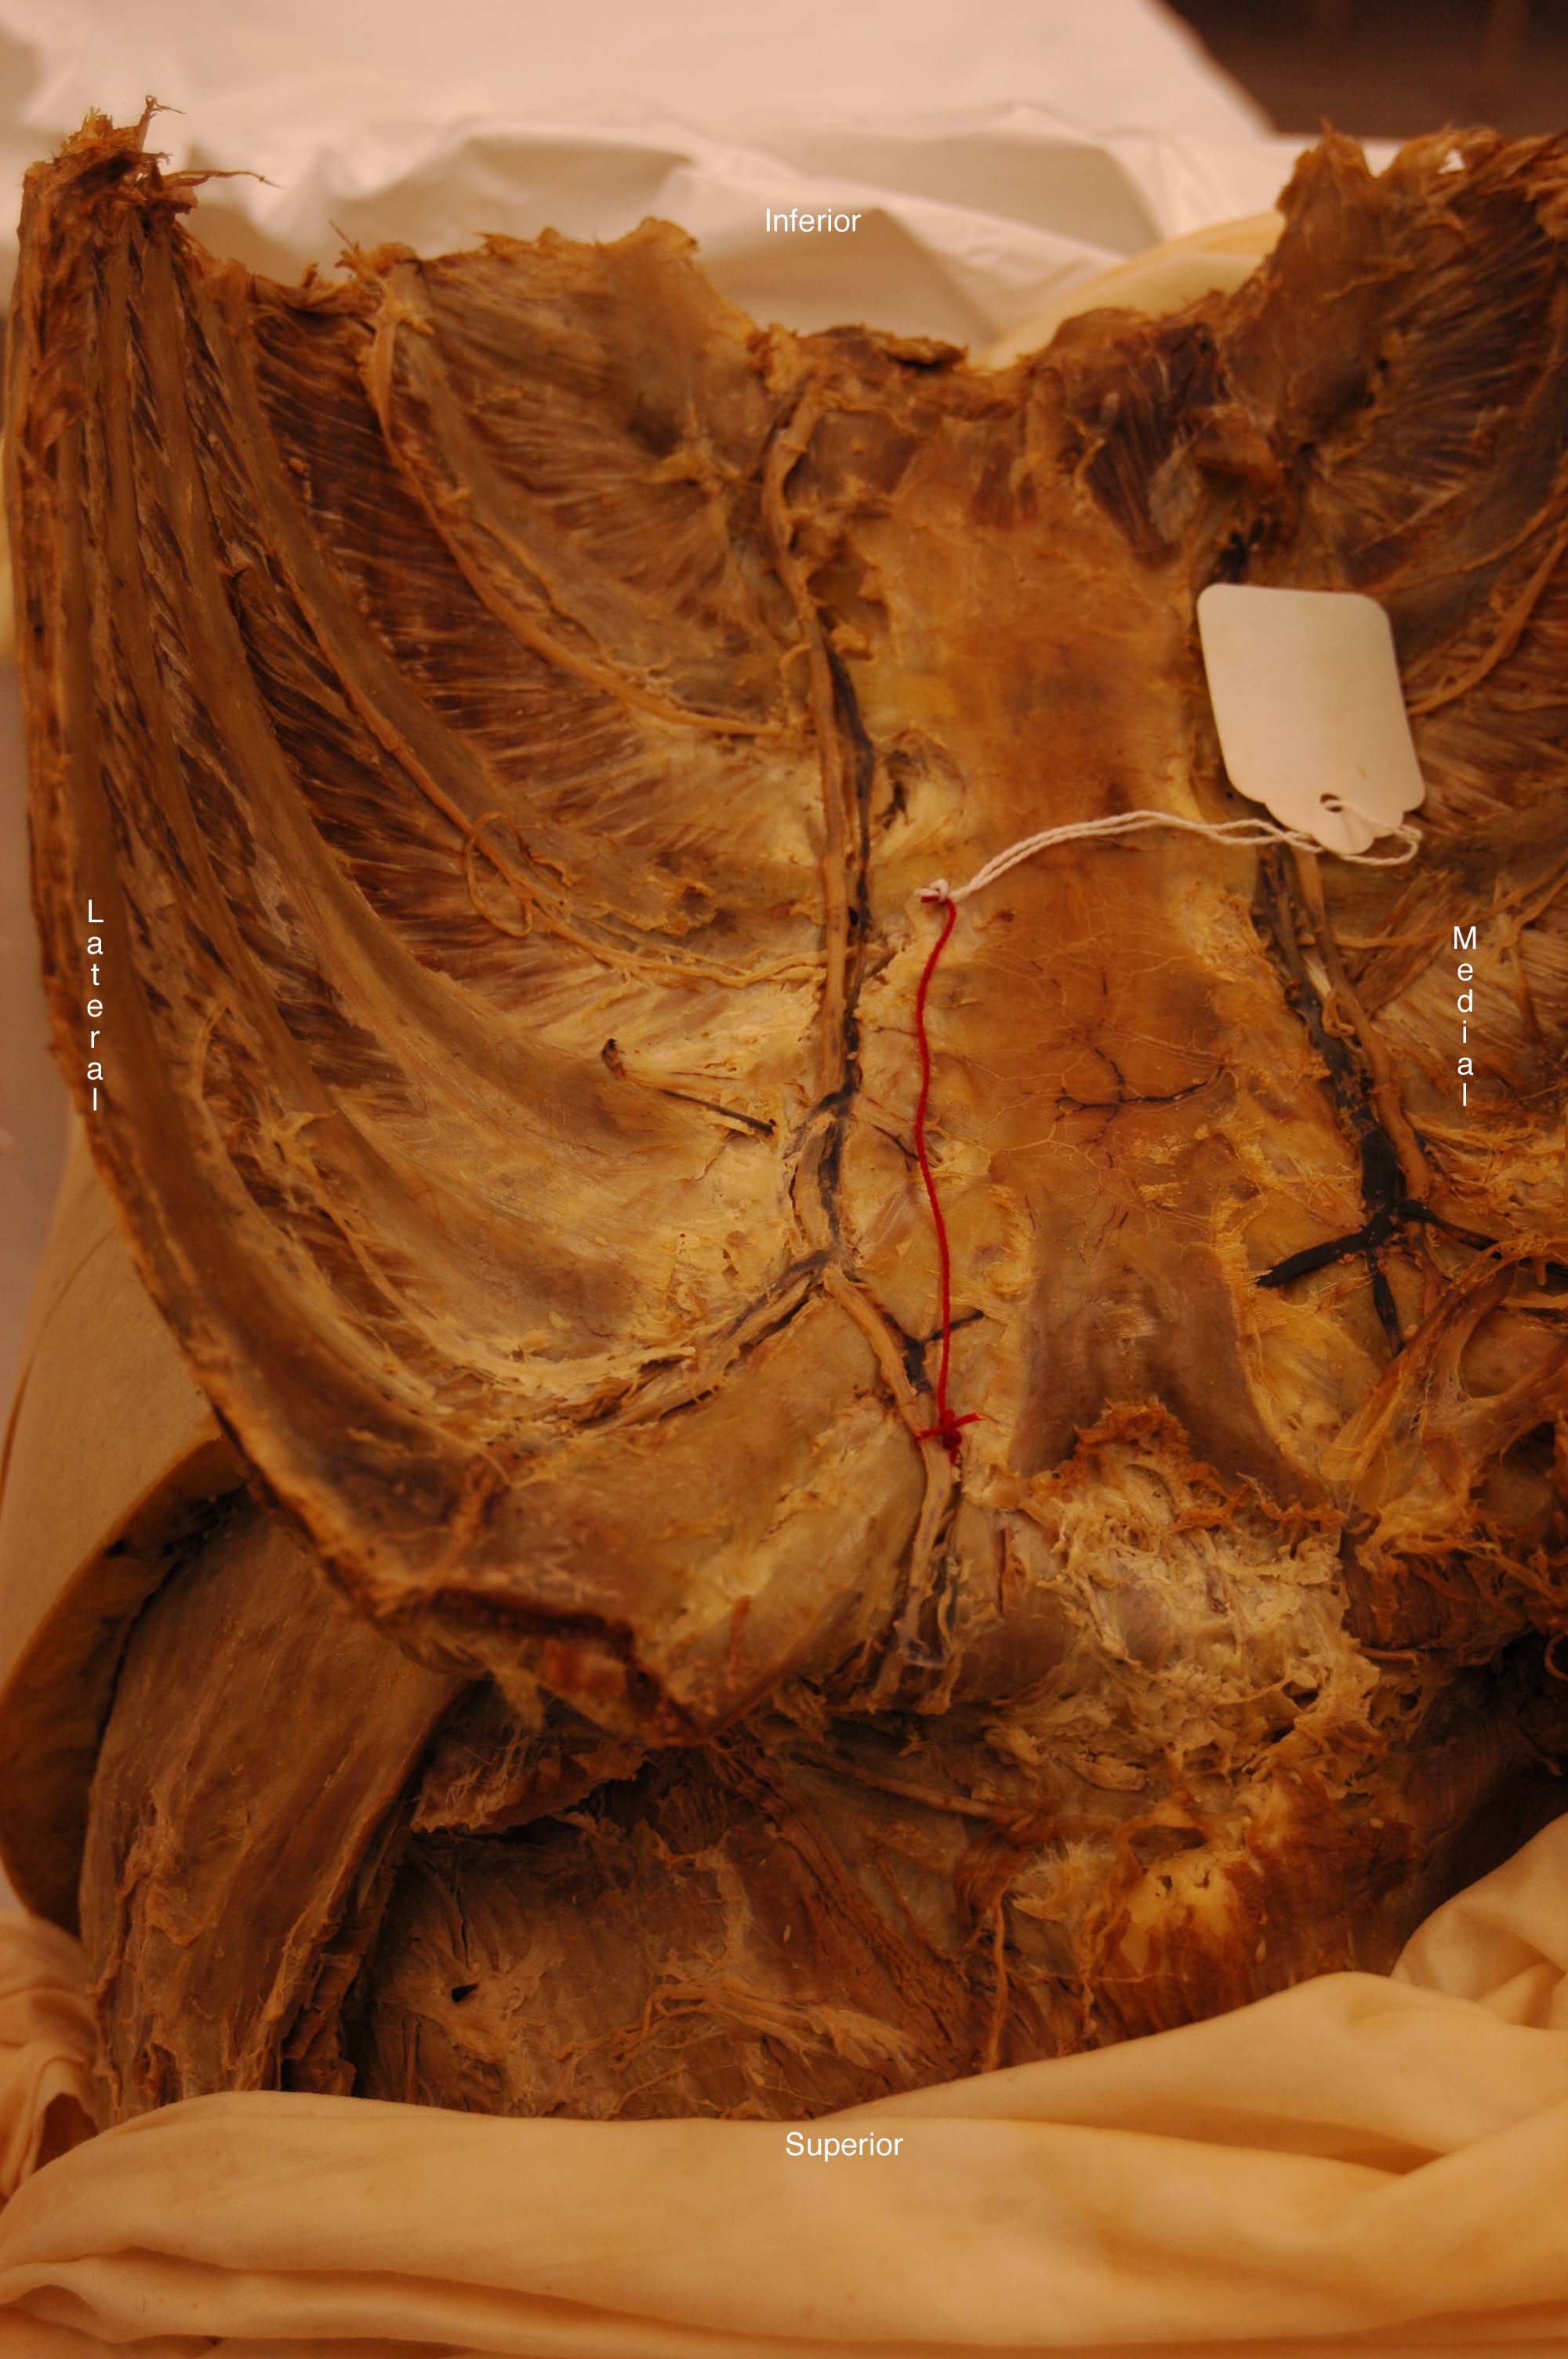 internal thoracic artery cadaver